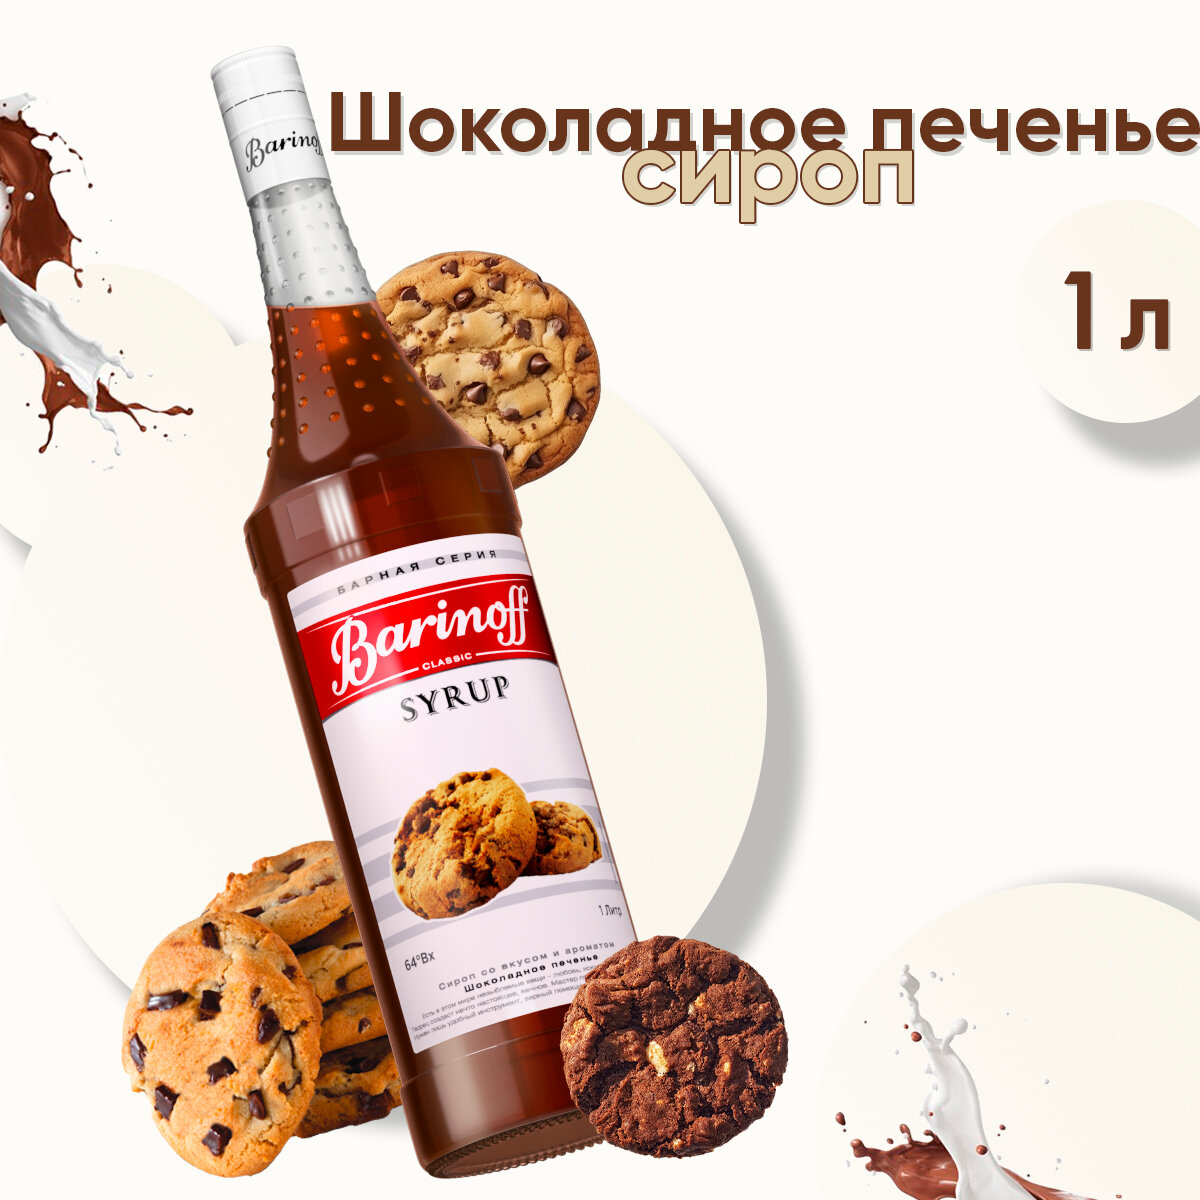 Сироп Barinoff Шоколадное печенье (для кофе, коктейлей, десертов, лимонада и мороженого), 1л